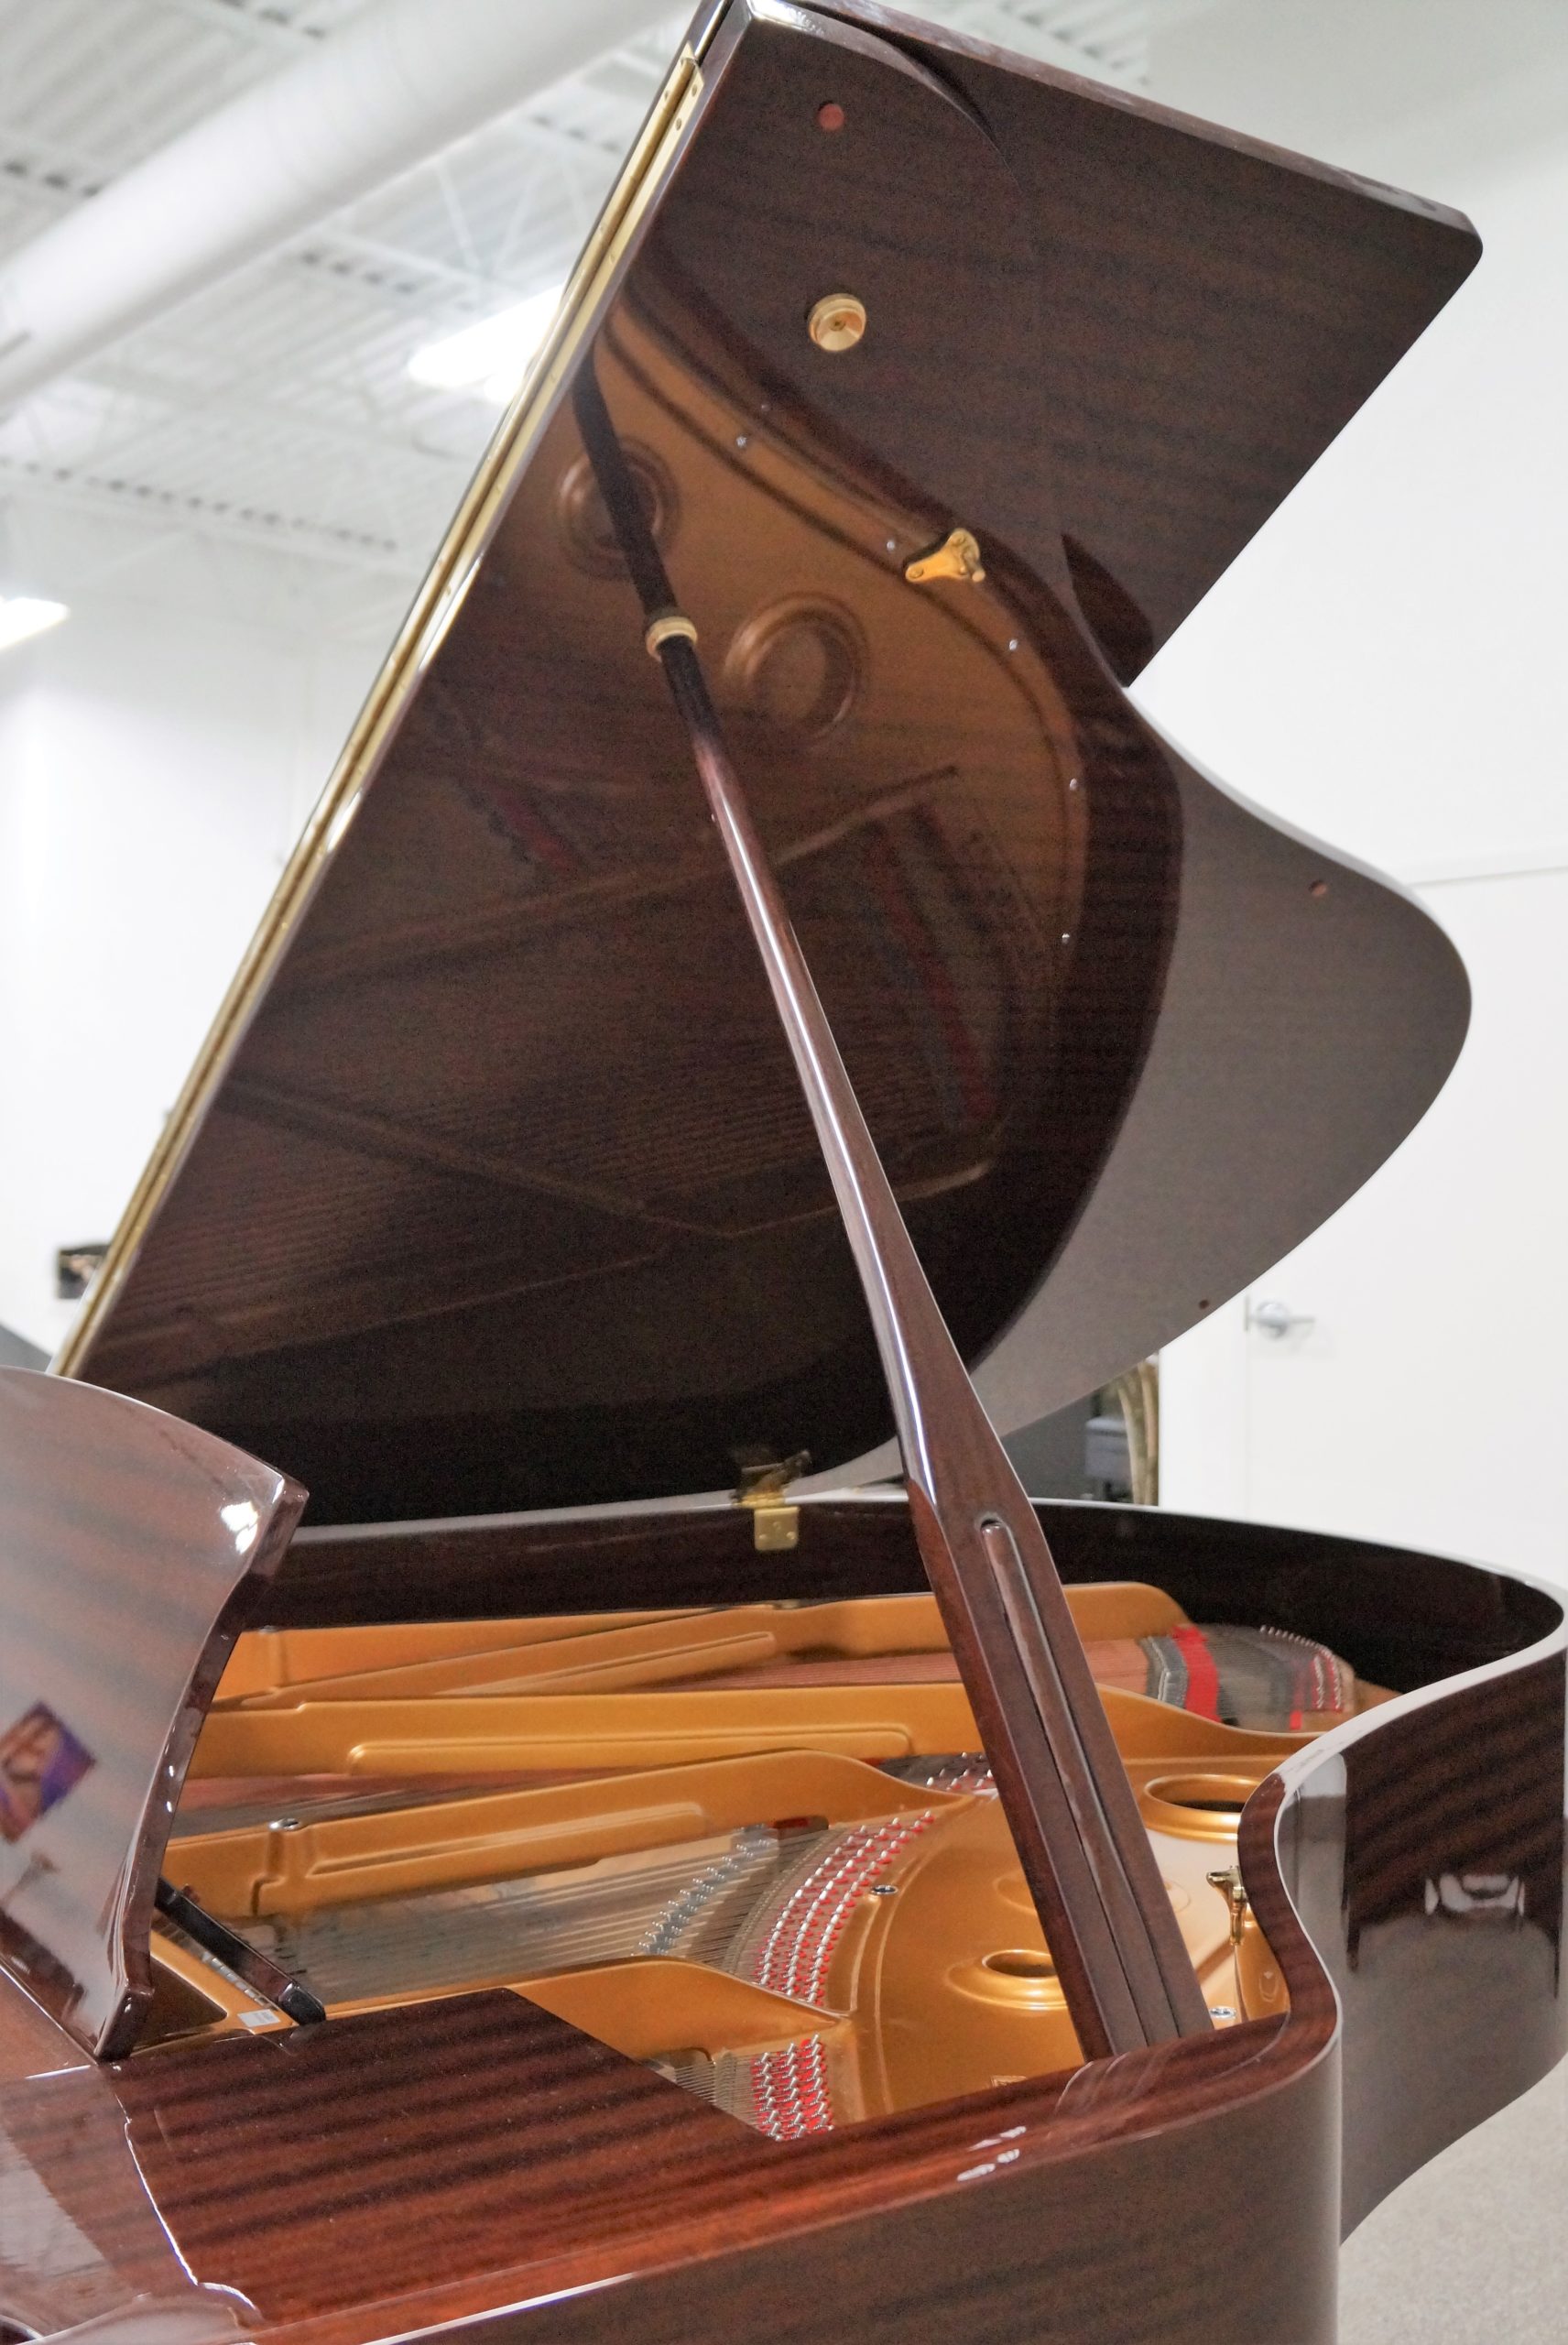 Kohler & Campbell Grand Piano 5’8 Mahogany Polish